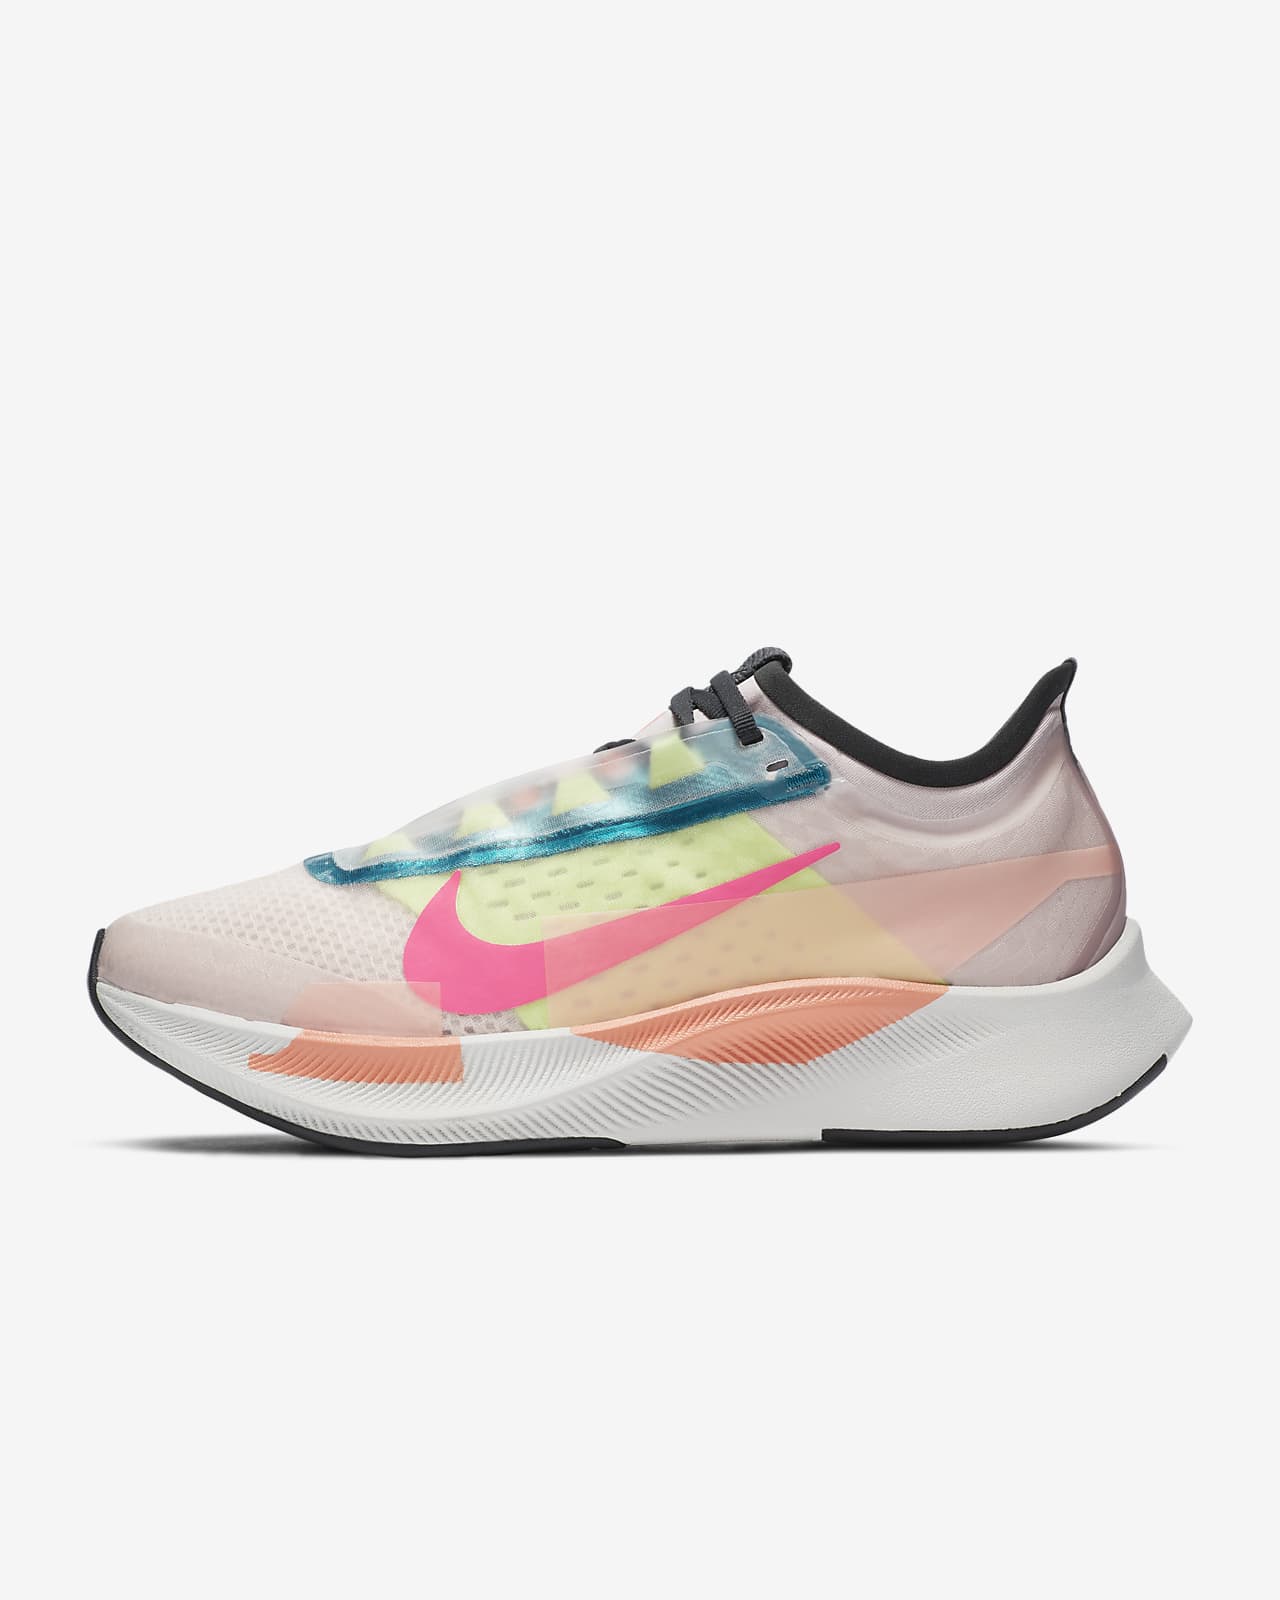 Nike Zoom Fly 3 Premium Women's Running Shoe. Nike.com